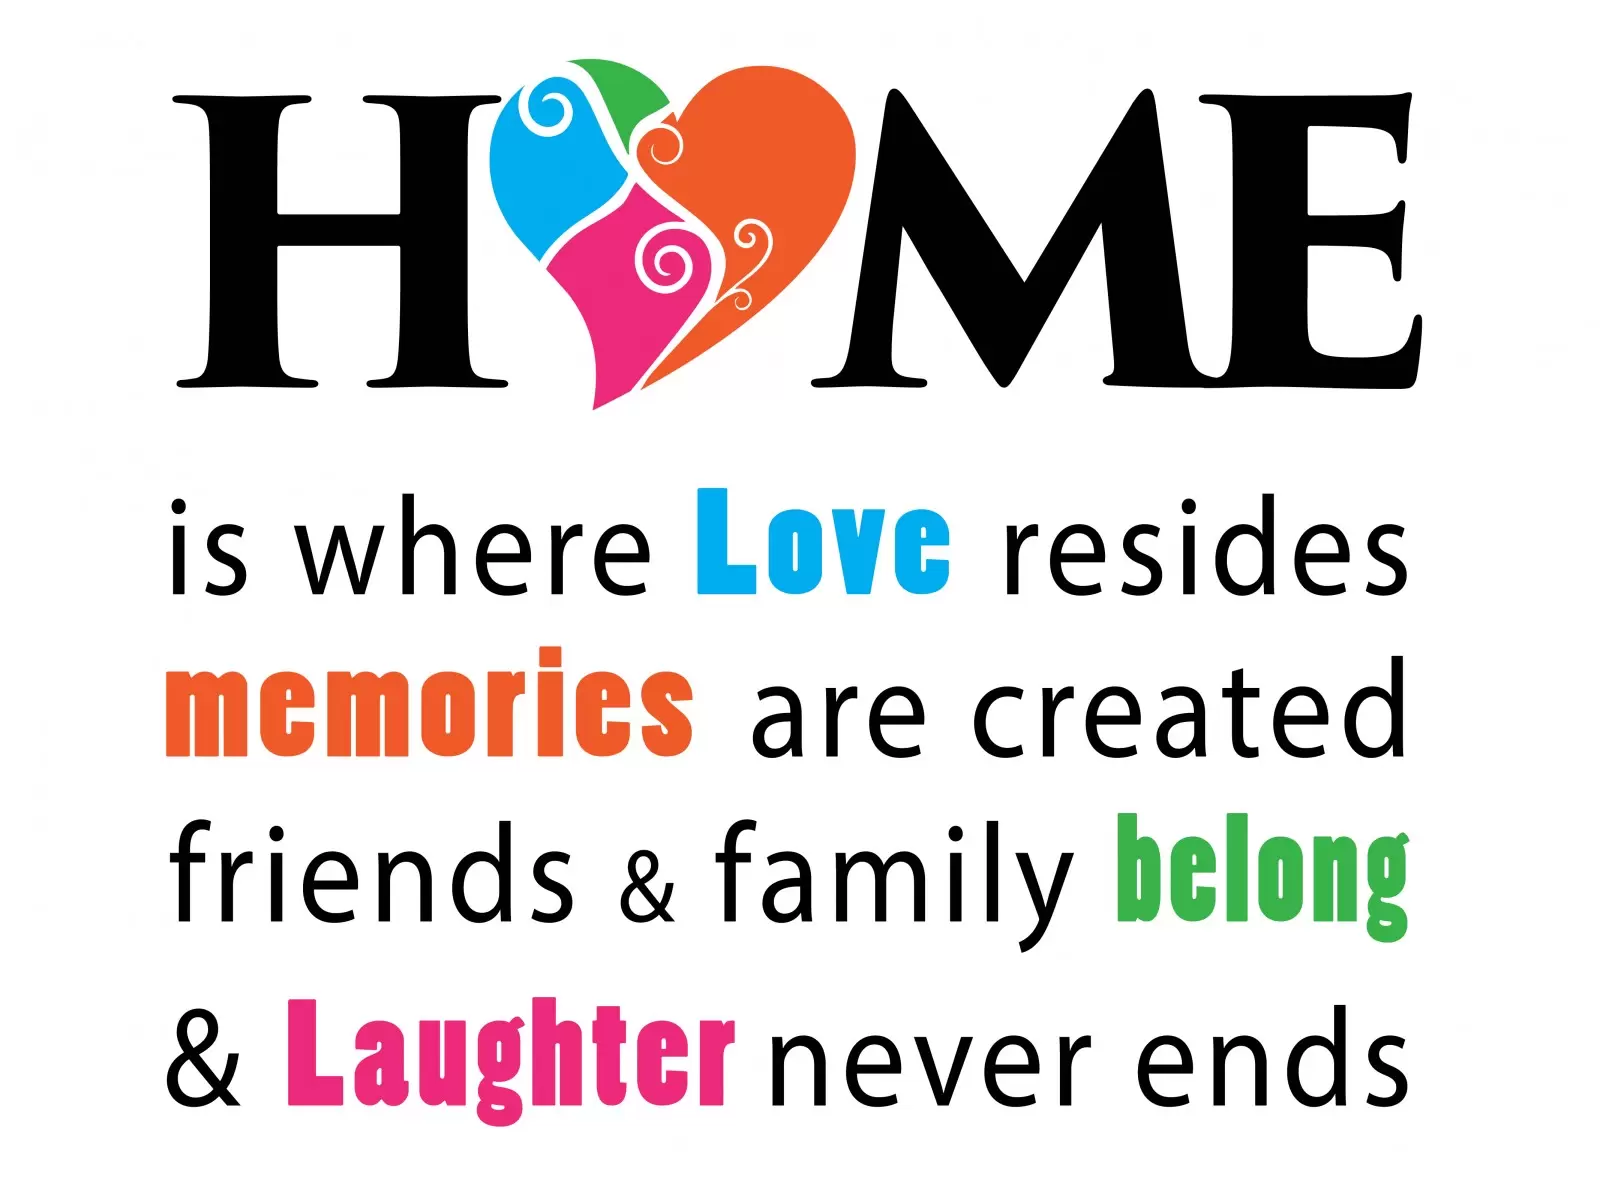 Home Where Love Resides - מסגרת עיצובים - מדבקות קיר משפטי השראה טיפוגרפיה דקורטיבית  - מק''ט: 240707